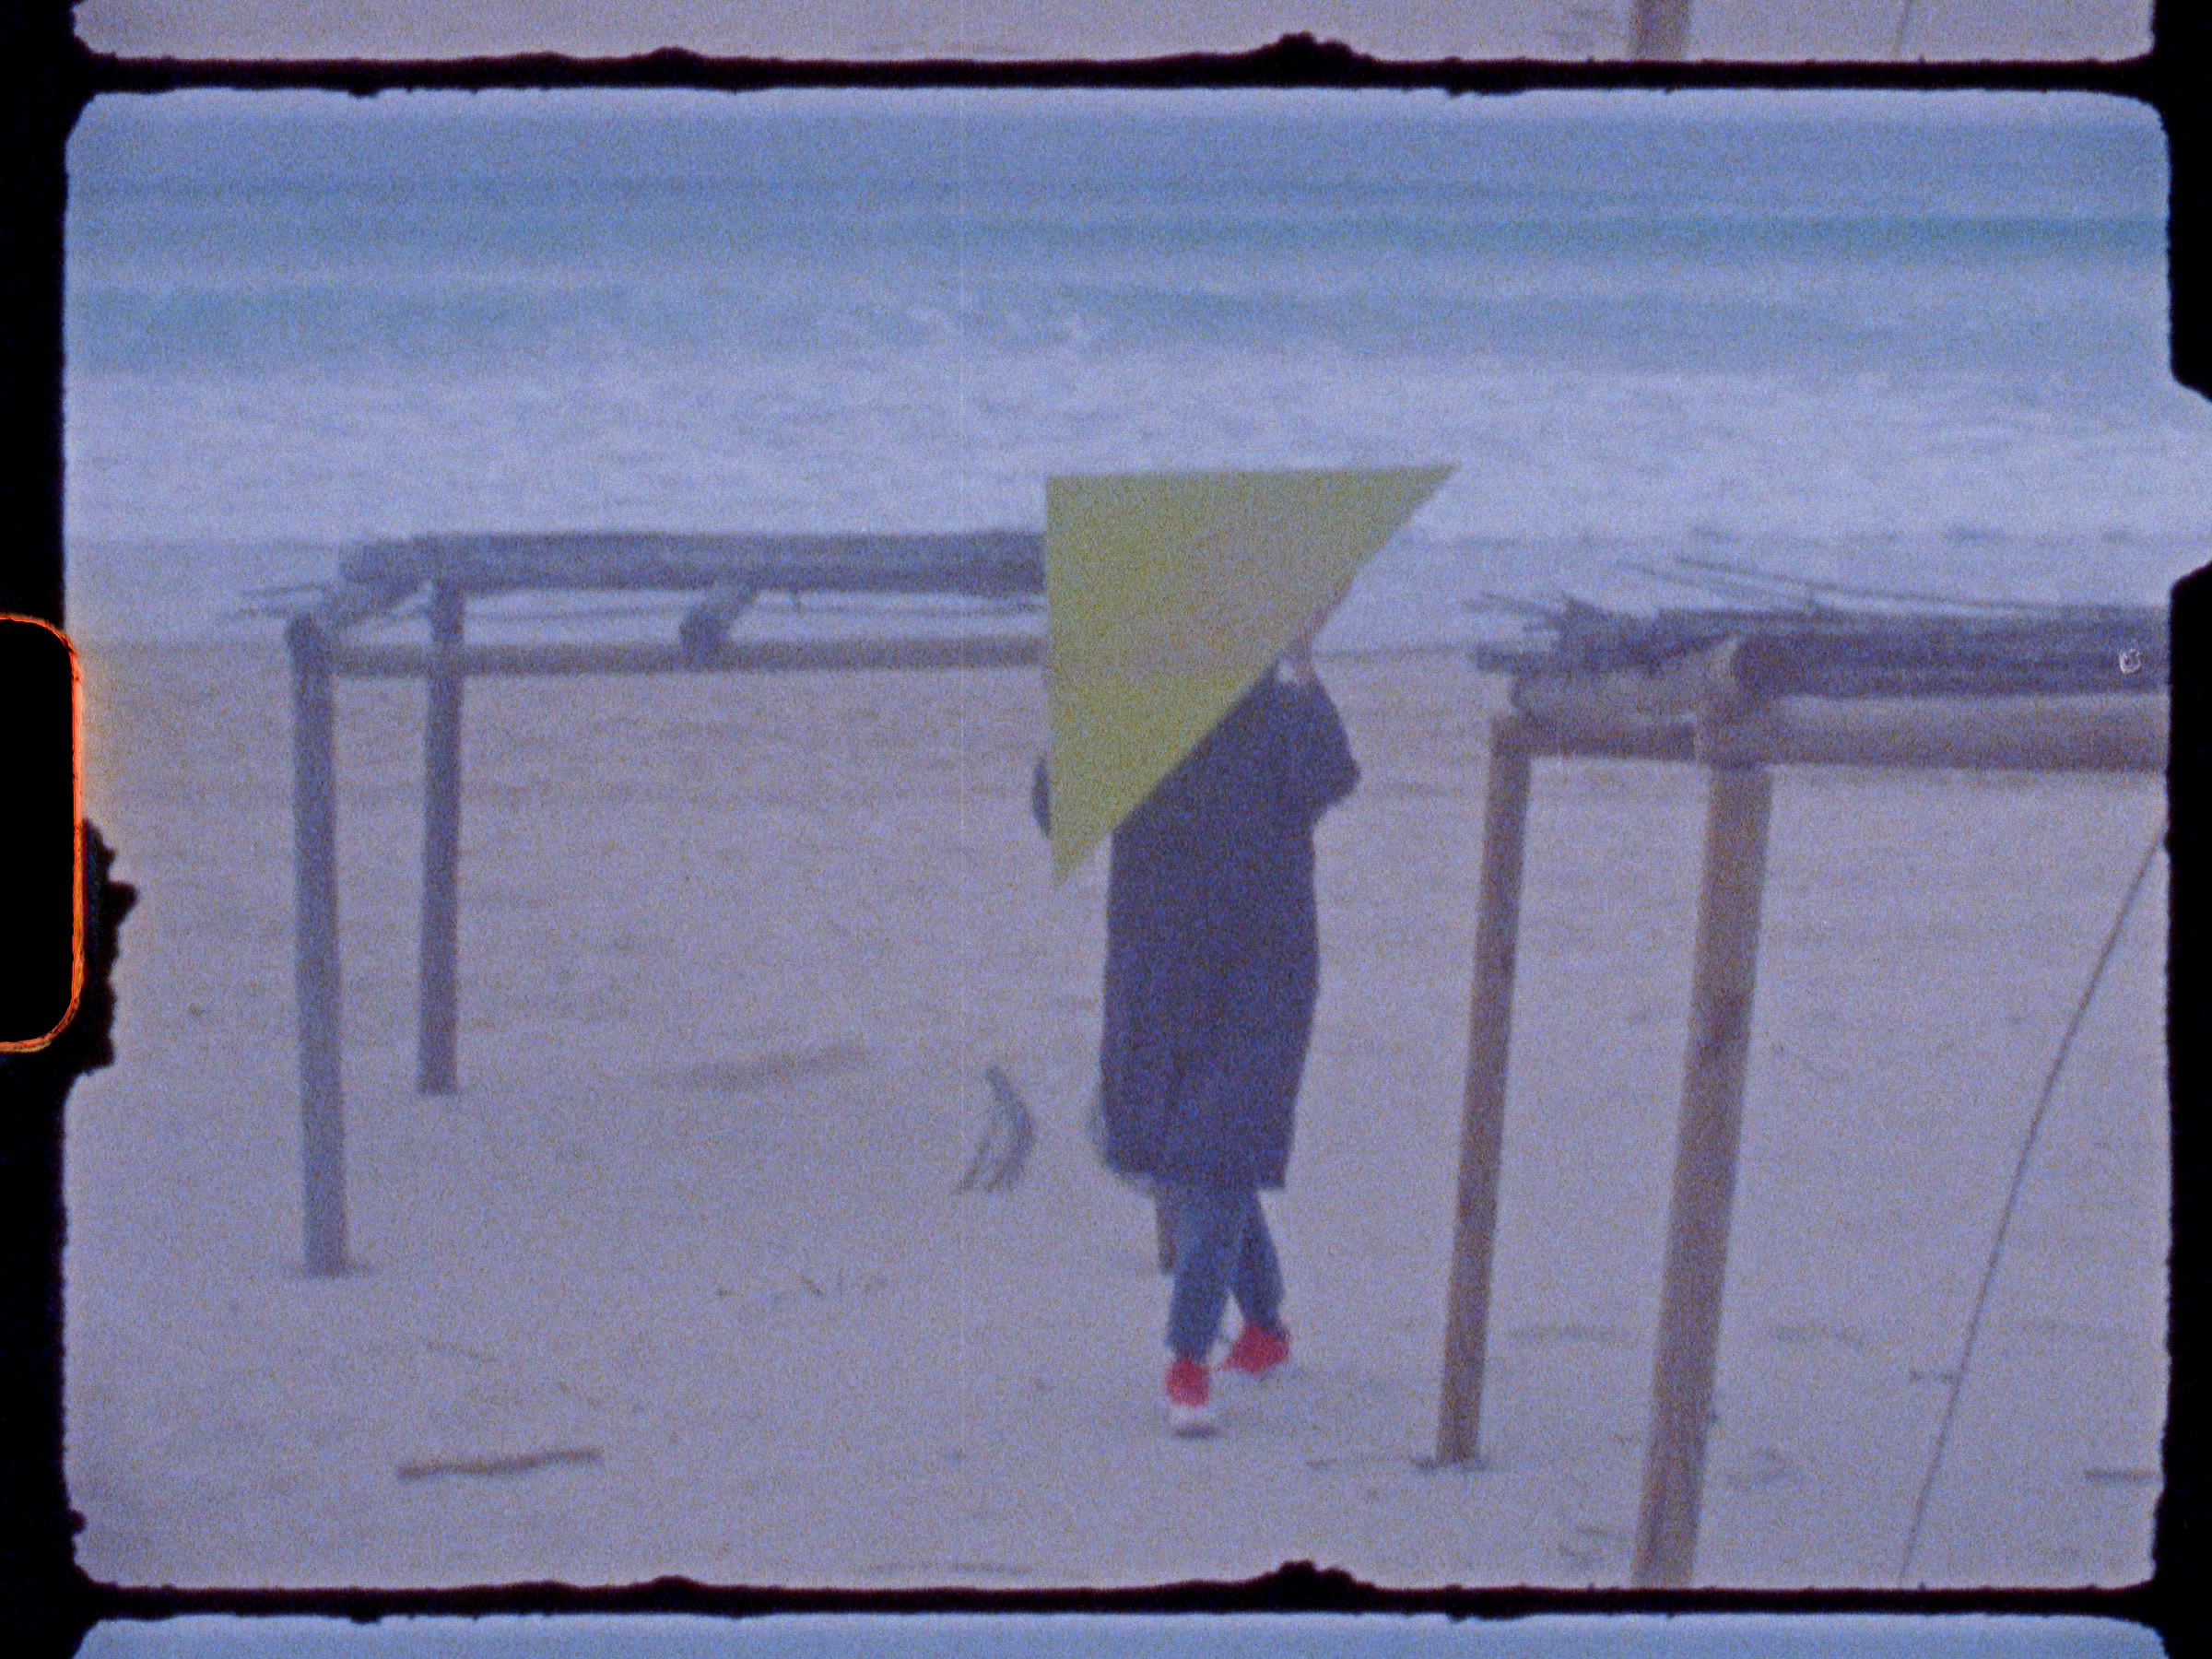 Terra-Triangular, Ana Cardoso, film still